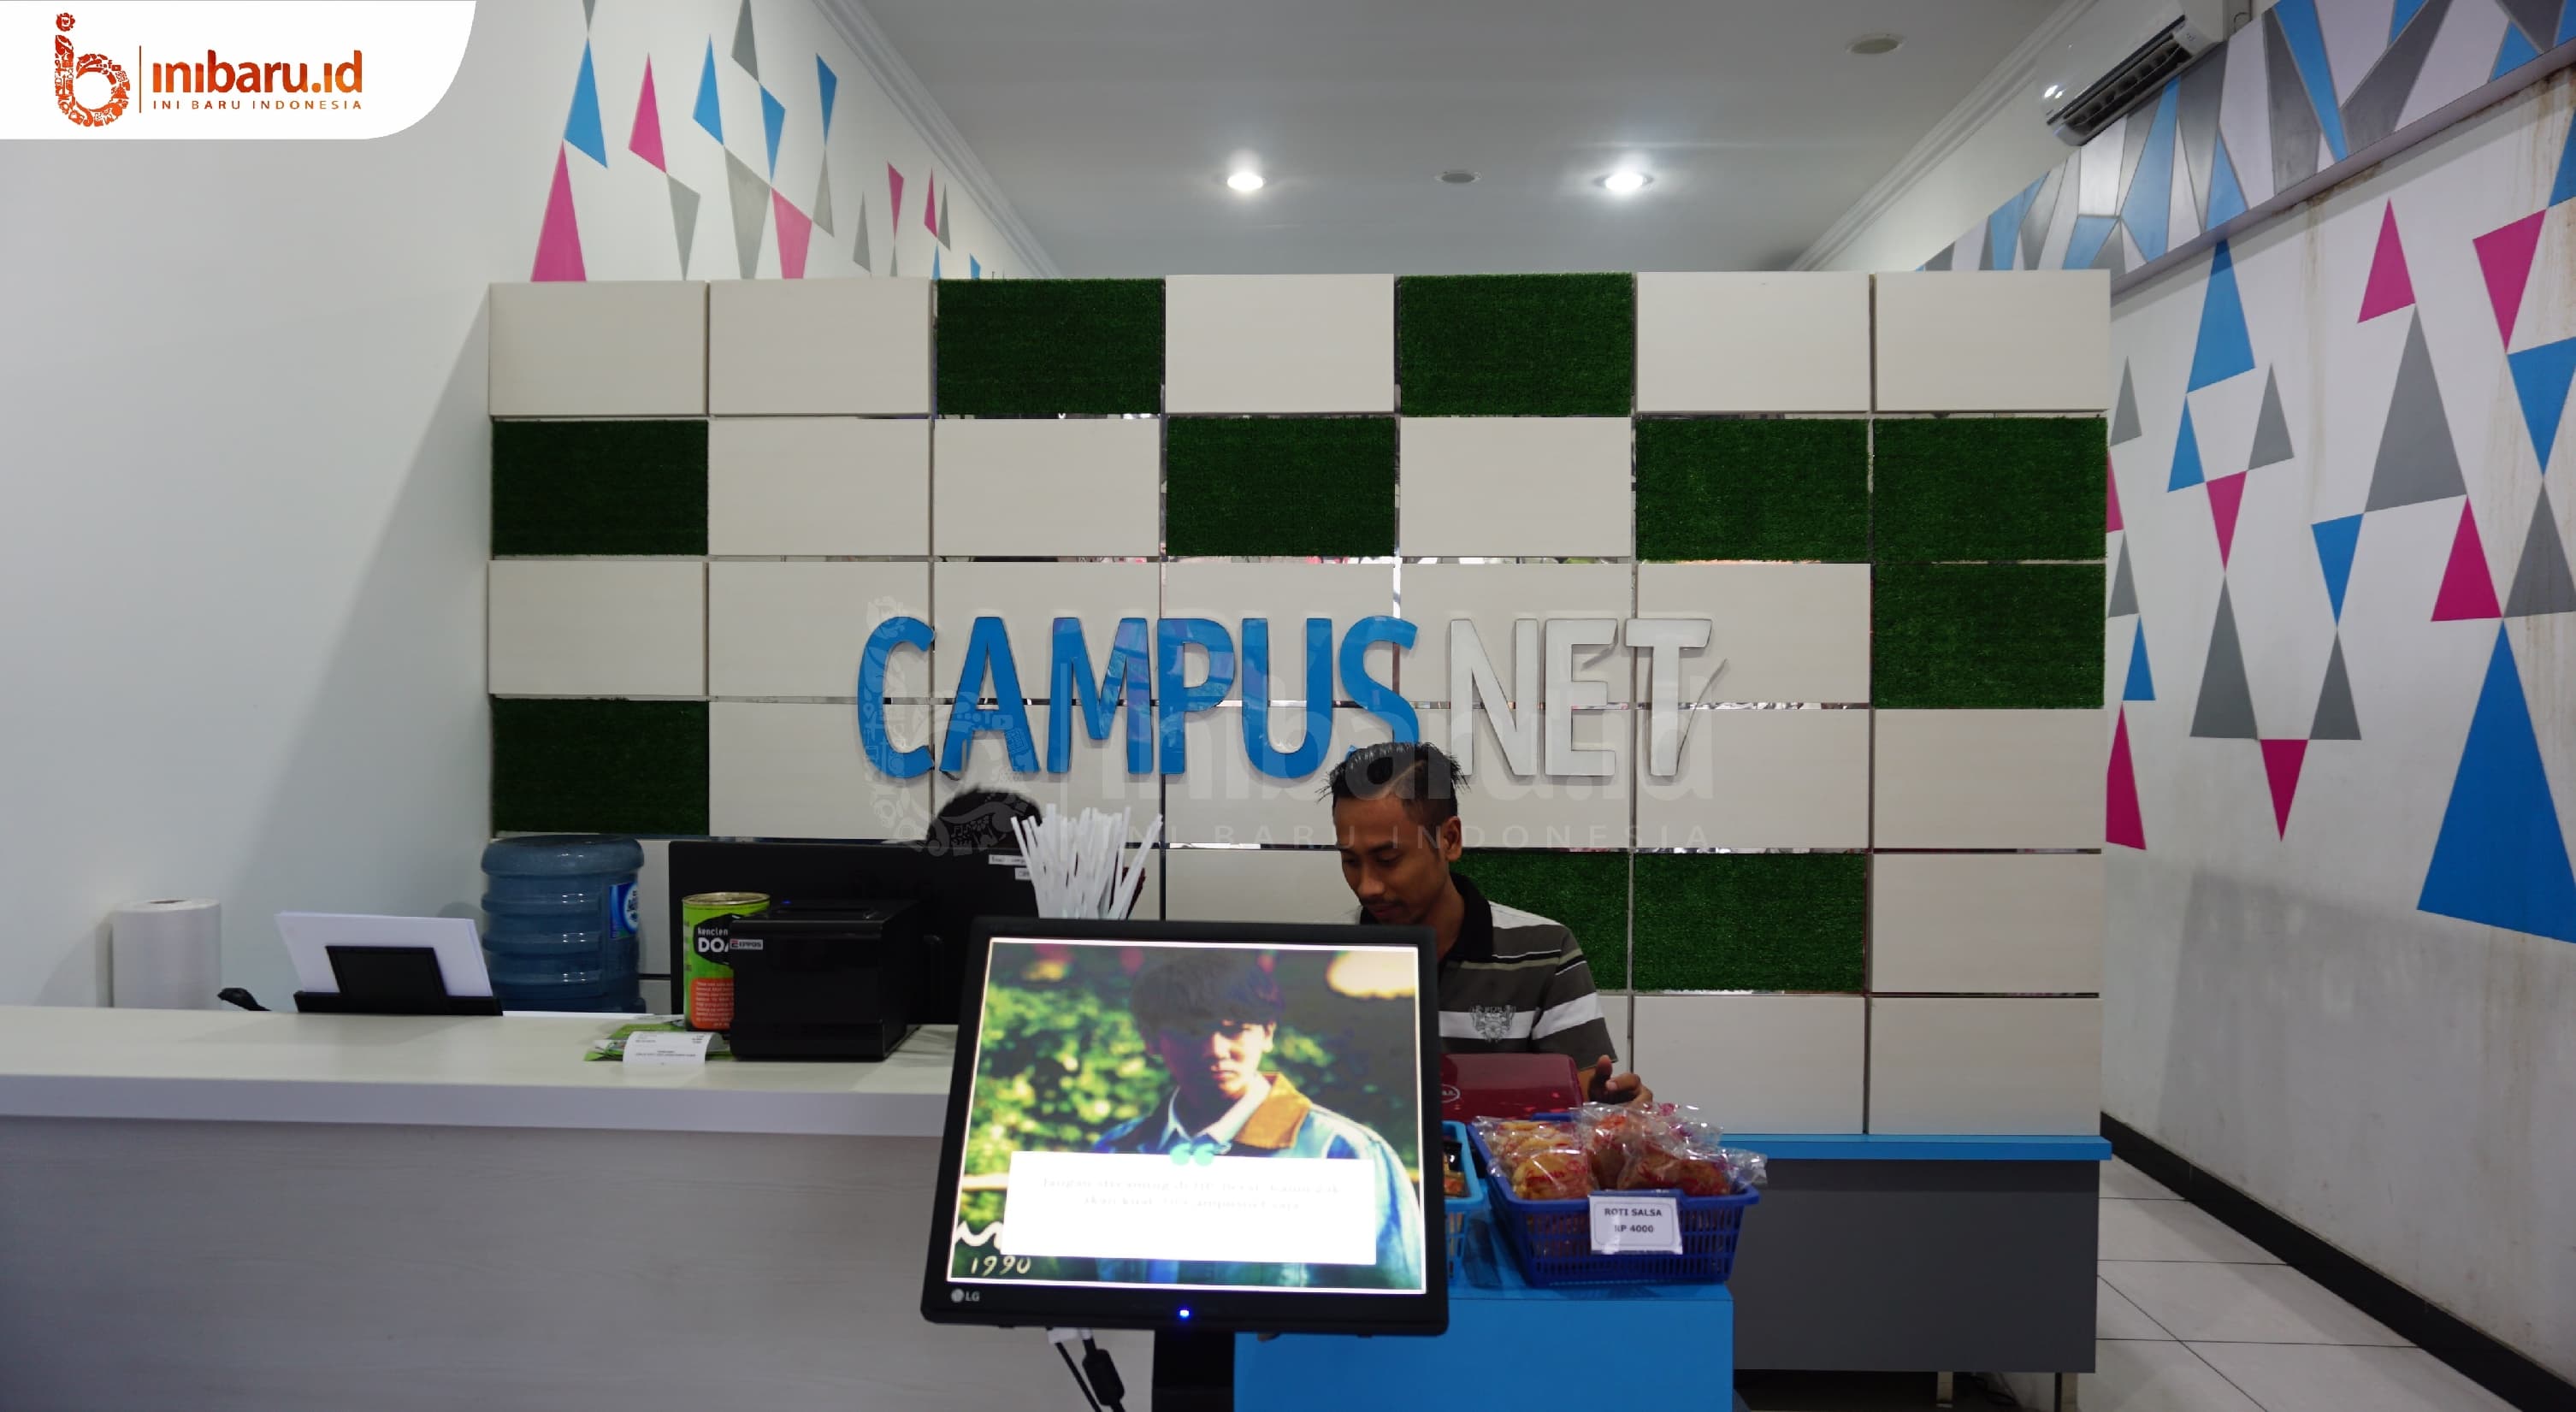 Campusnet. (Inibaru.id/Ayu S Irawati)